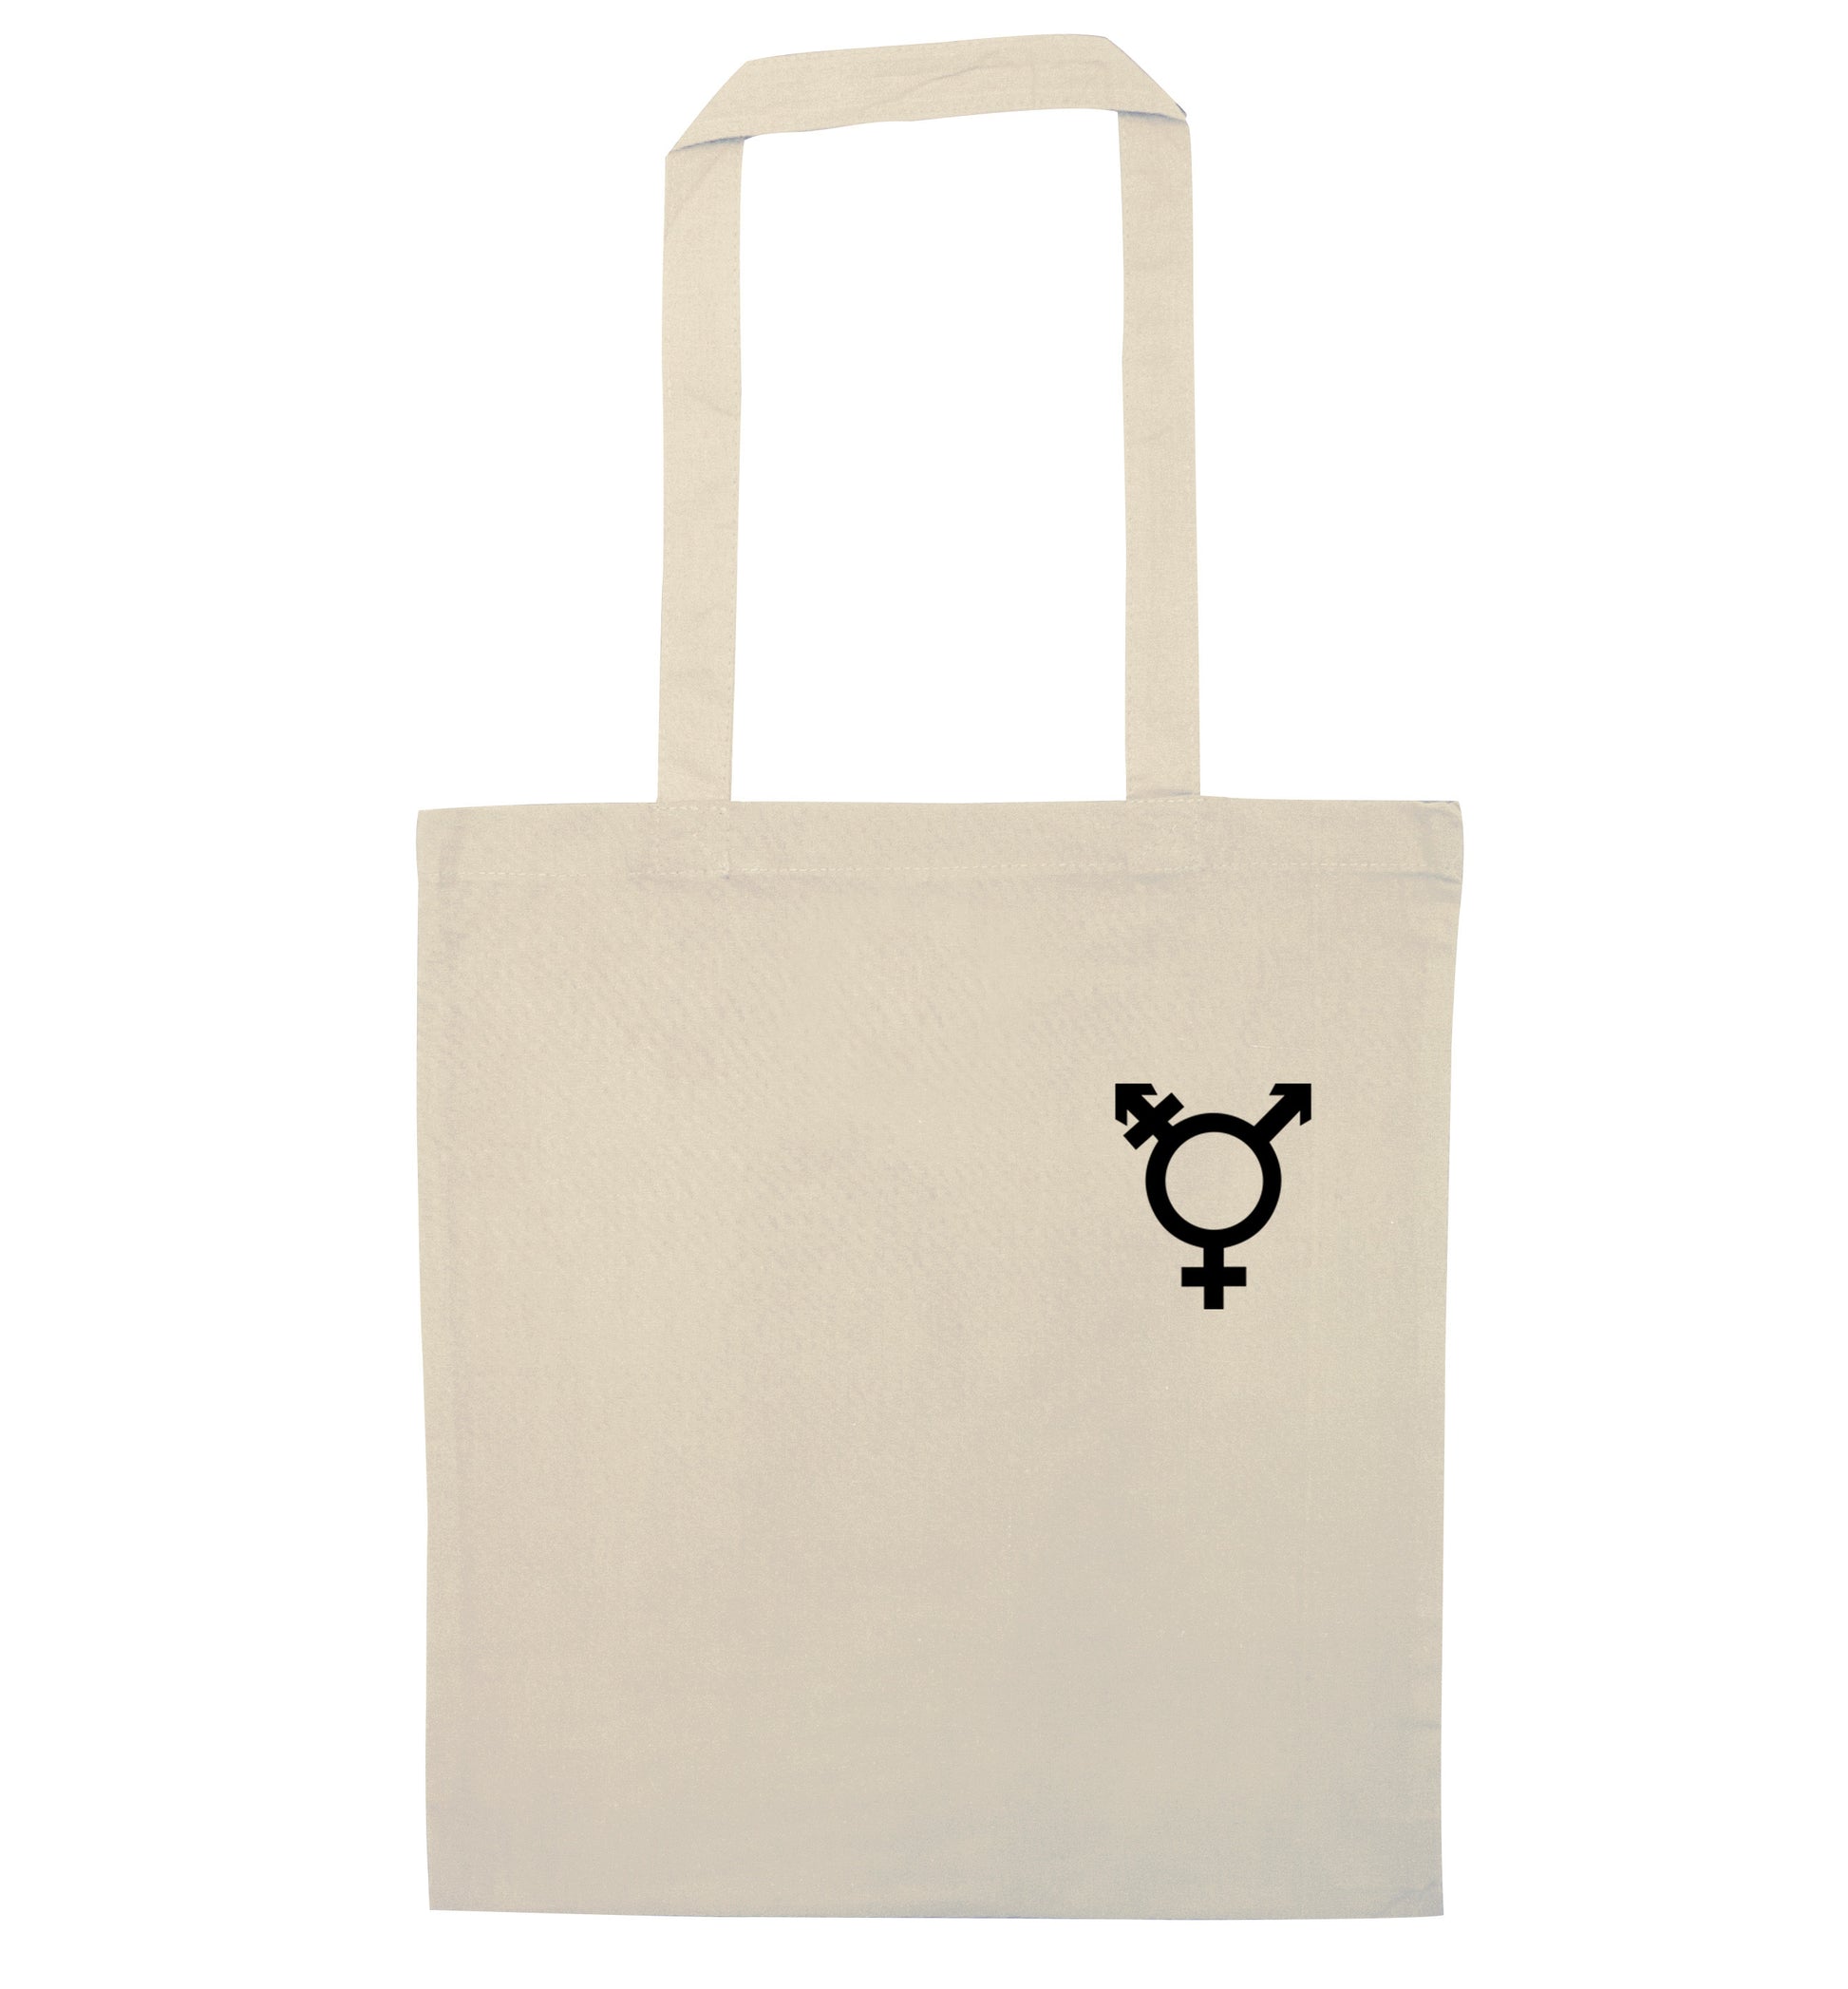 Trans gender symbol pocket natural tote bag